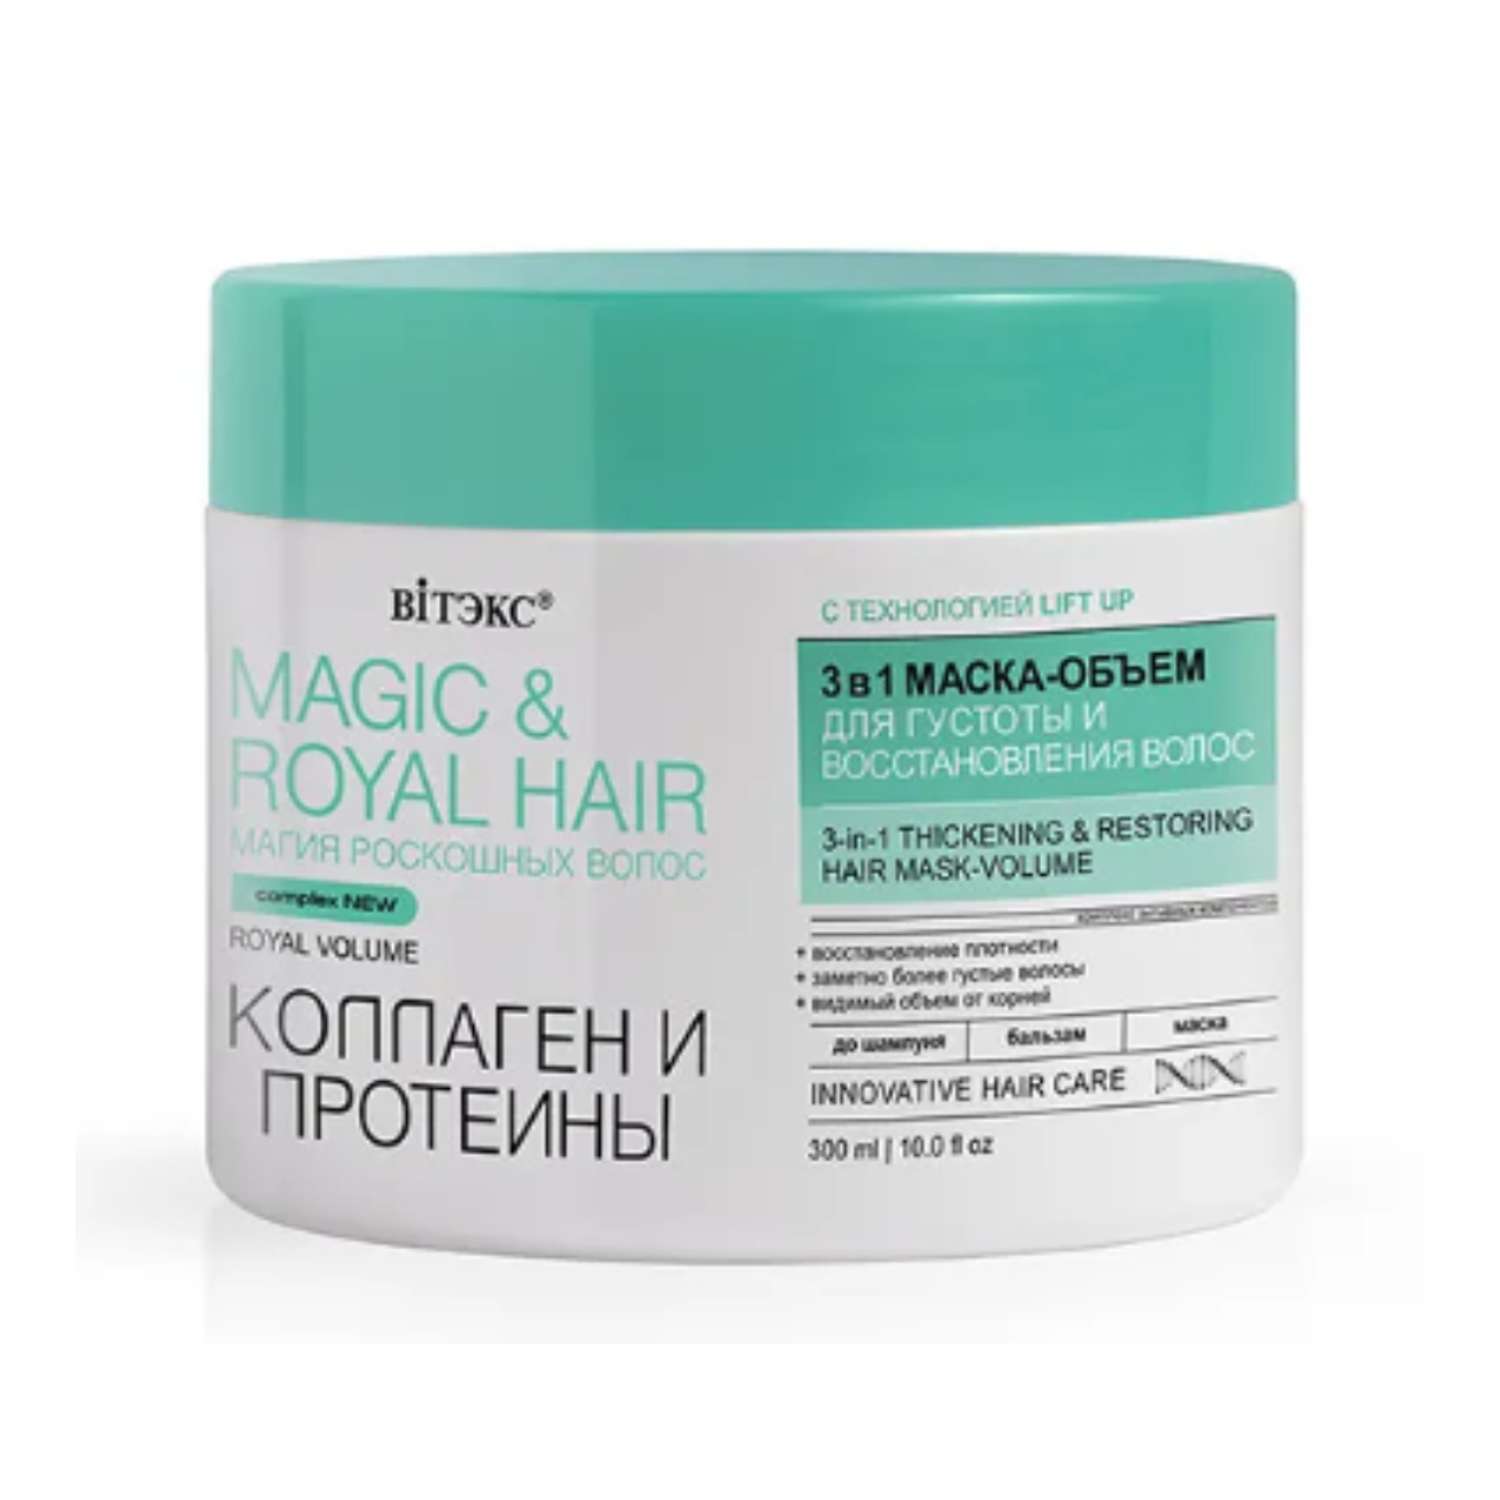 Маска для волос ВИТЭКС Magic amp Royal Hair коллагены и протеины 300 мл - фото 1